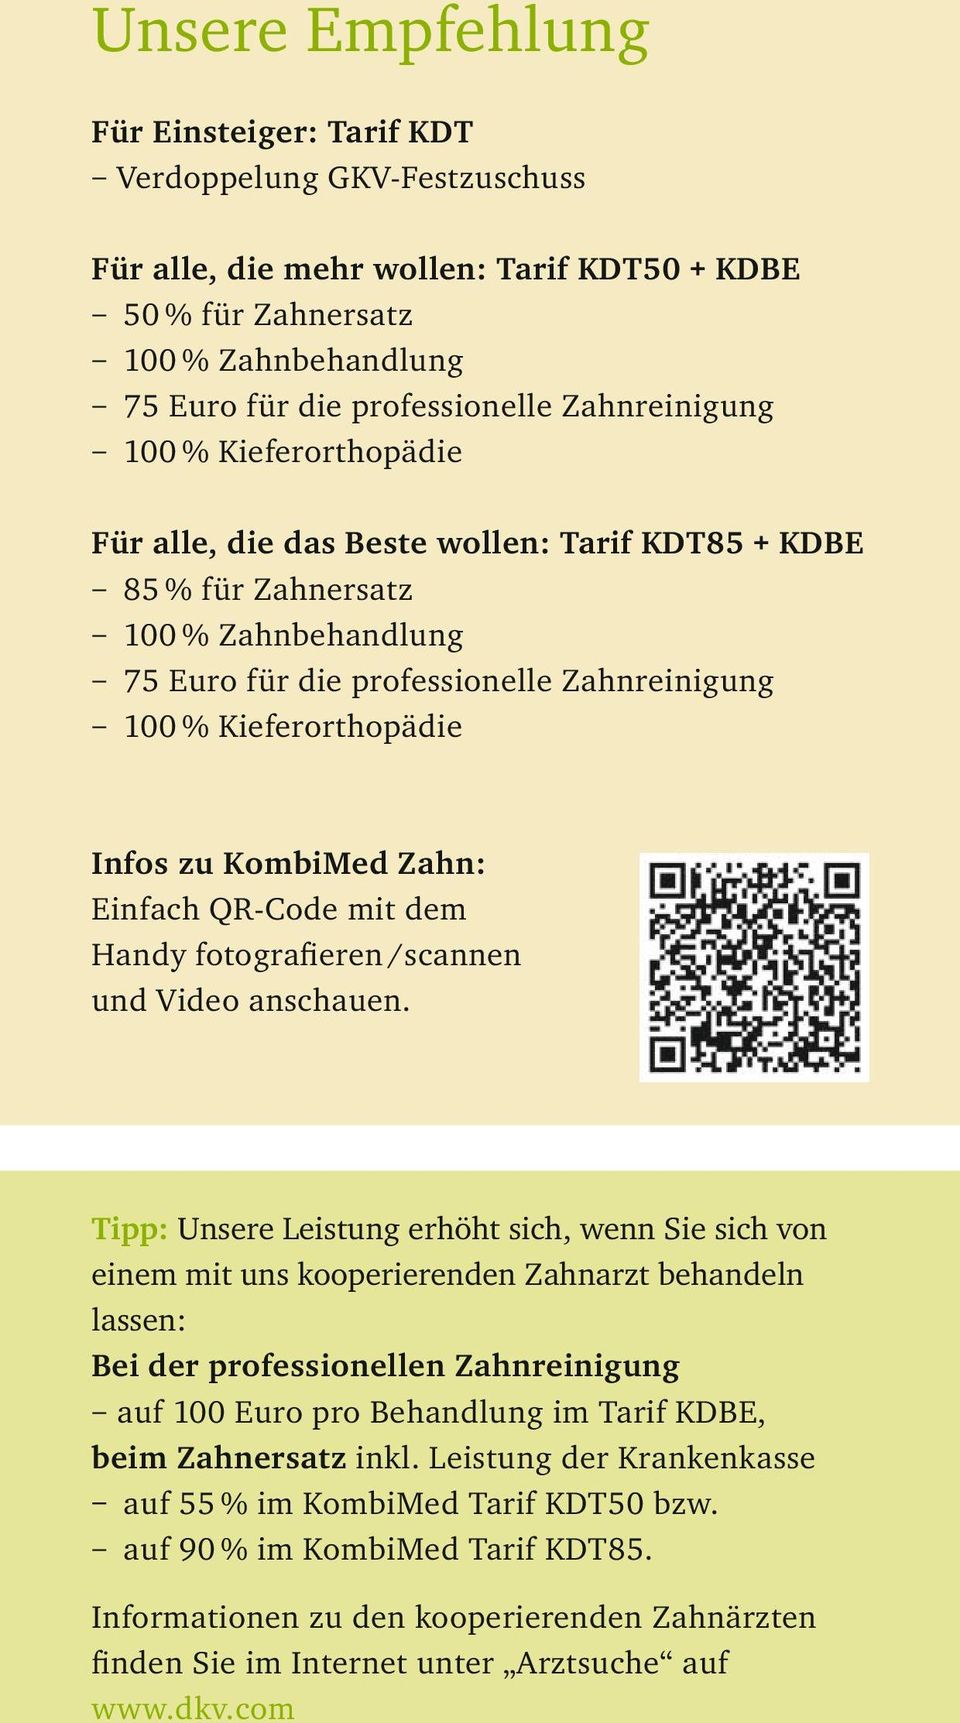 Infos zu KombiMed Zahn: Einfach QR-Code mit dem Handy fotografieren /scannen und Video anschauen.